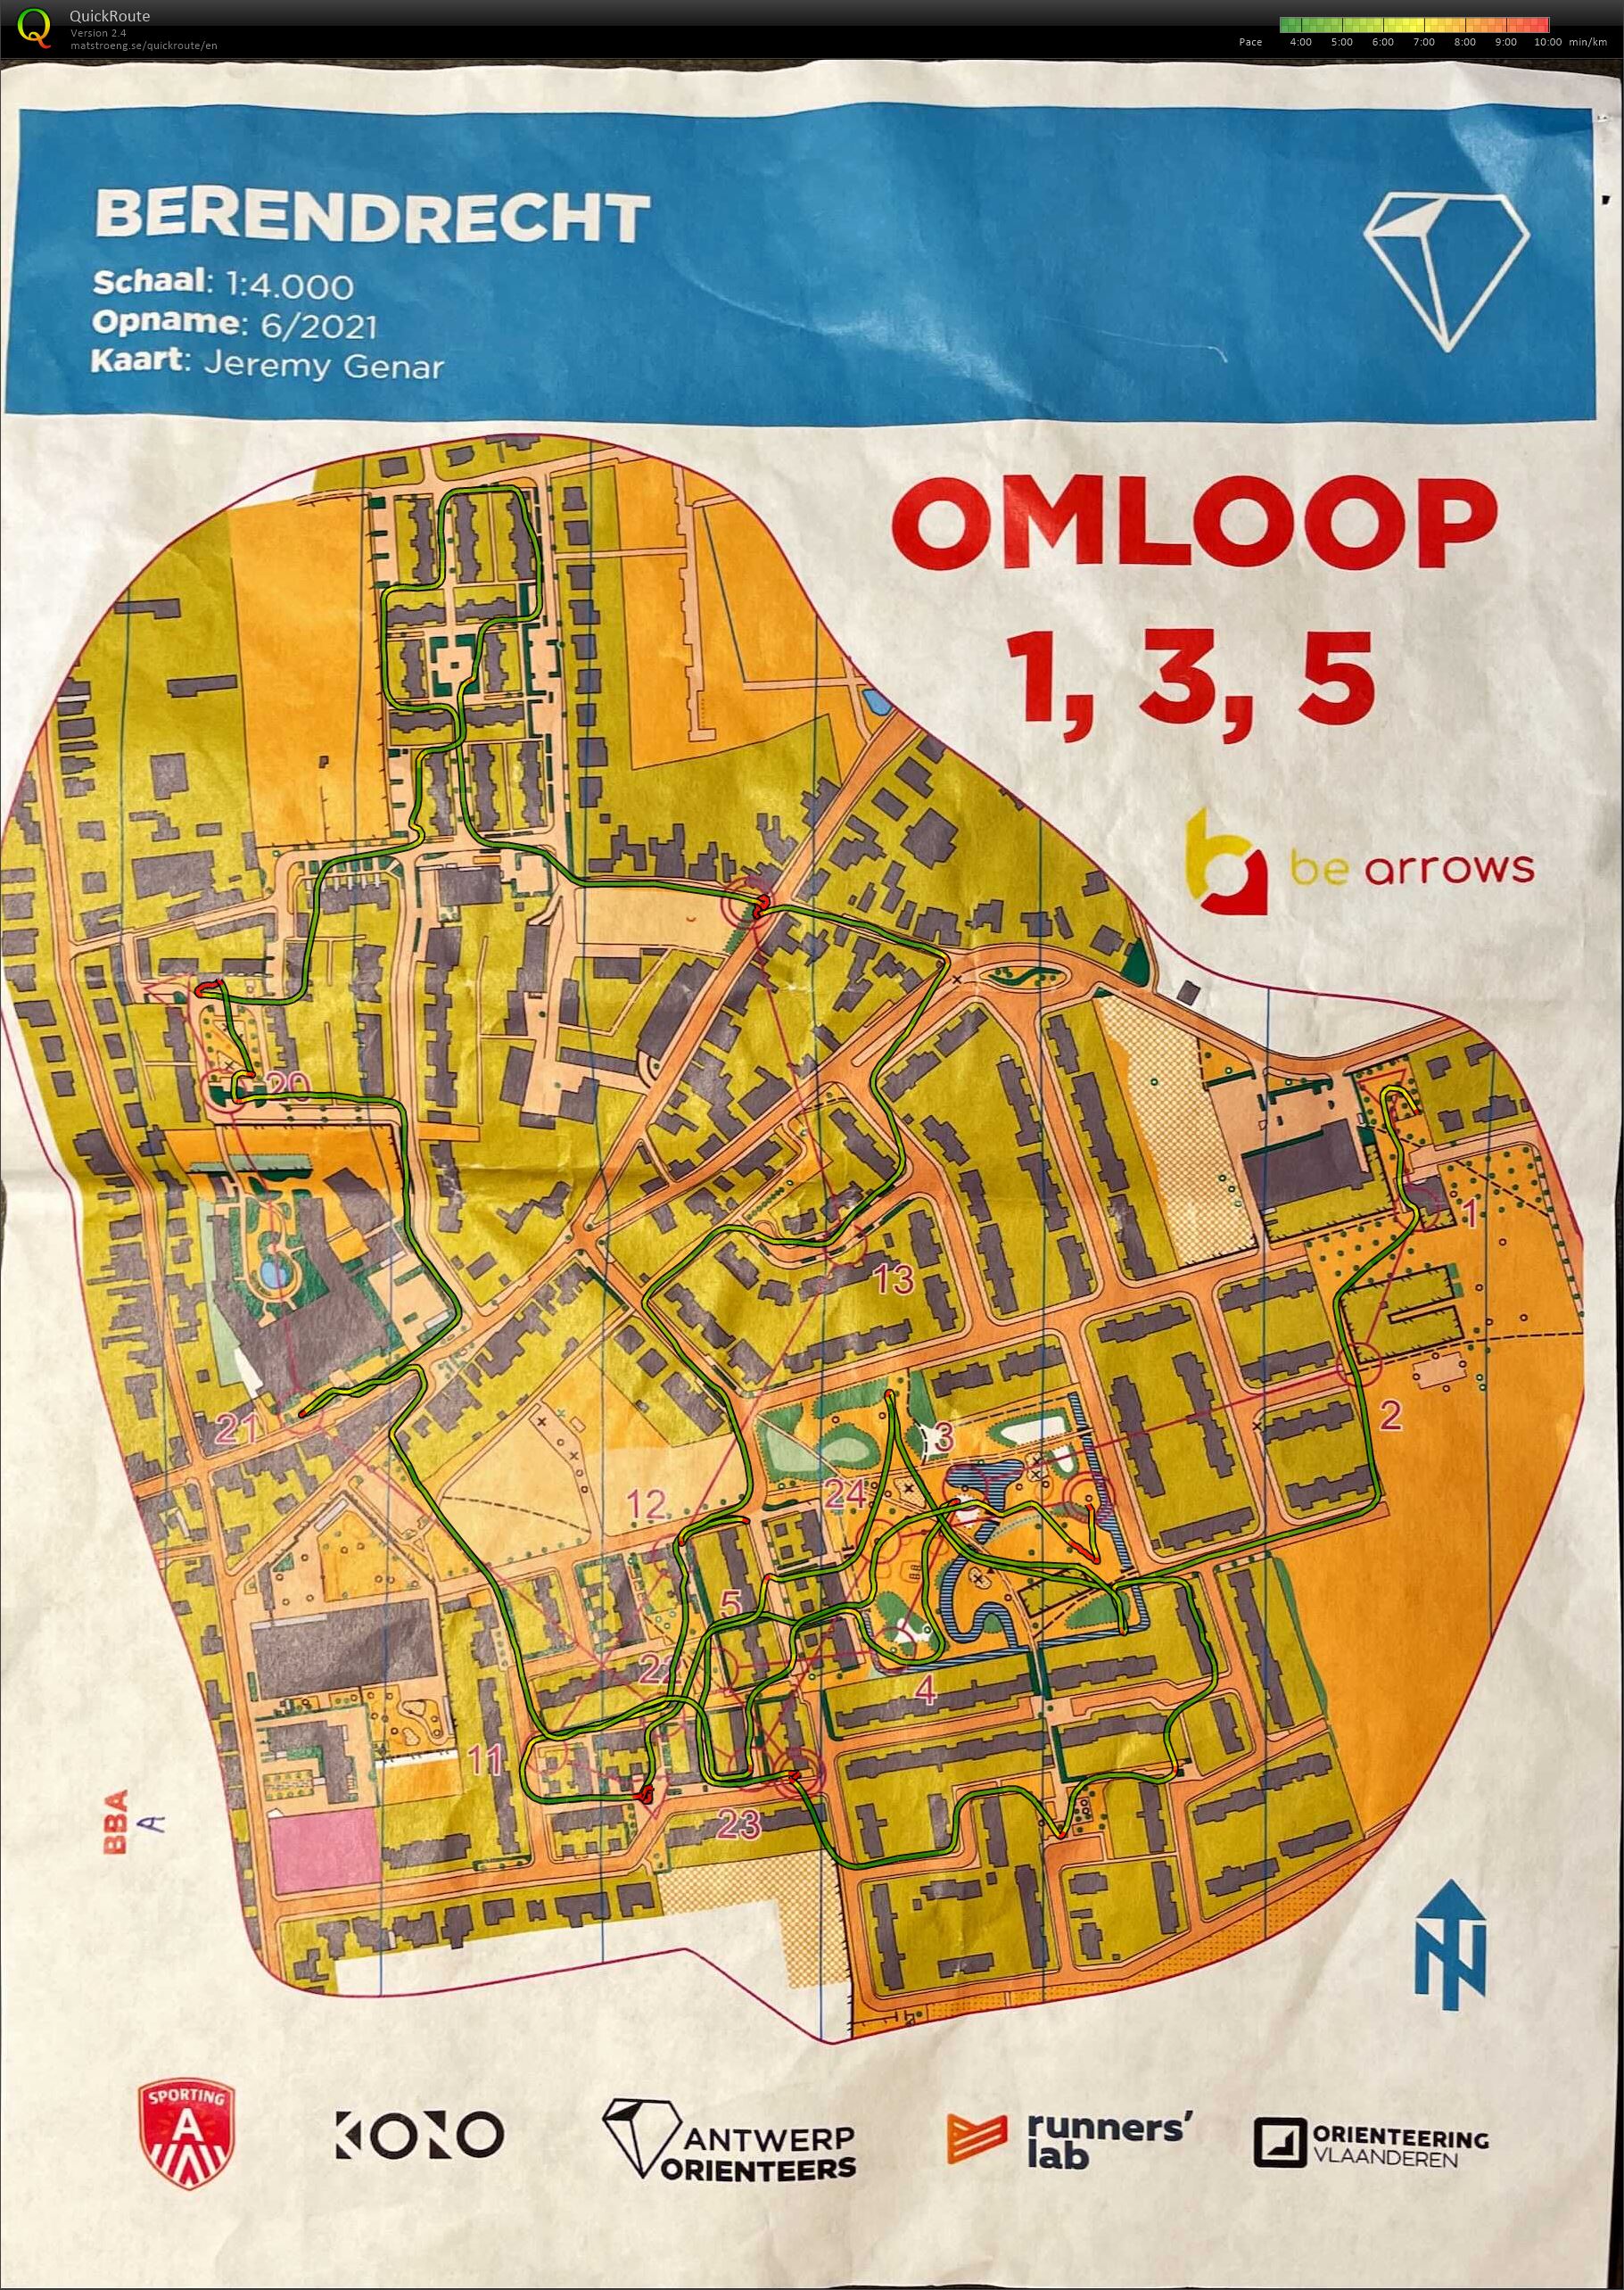 Berendrecht - Omloop 1,3,5 (11/06/2021)